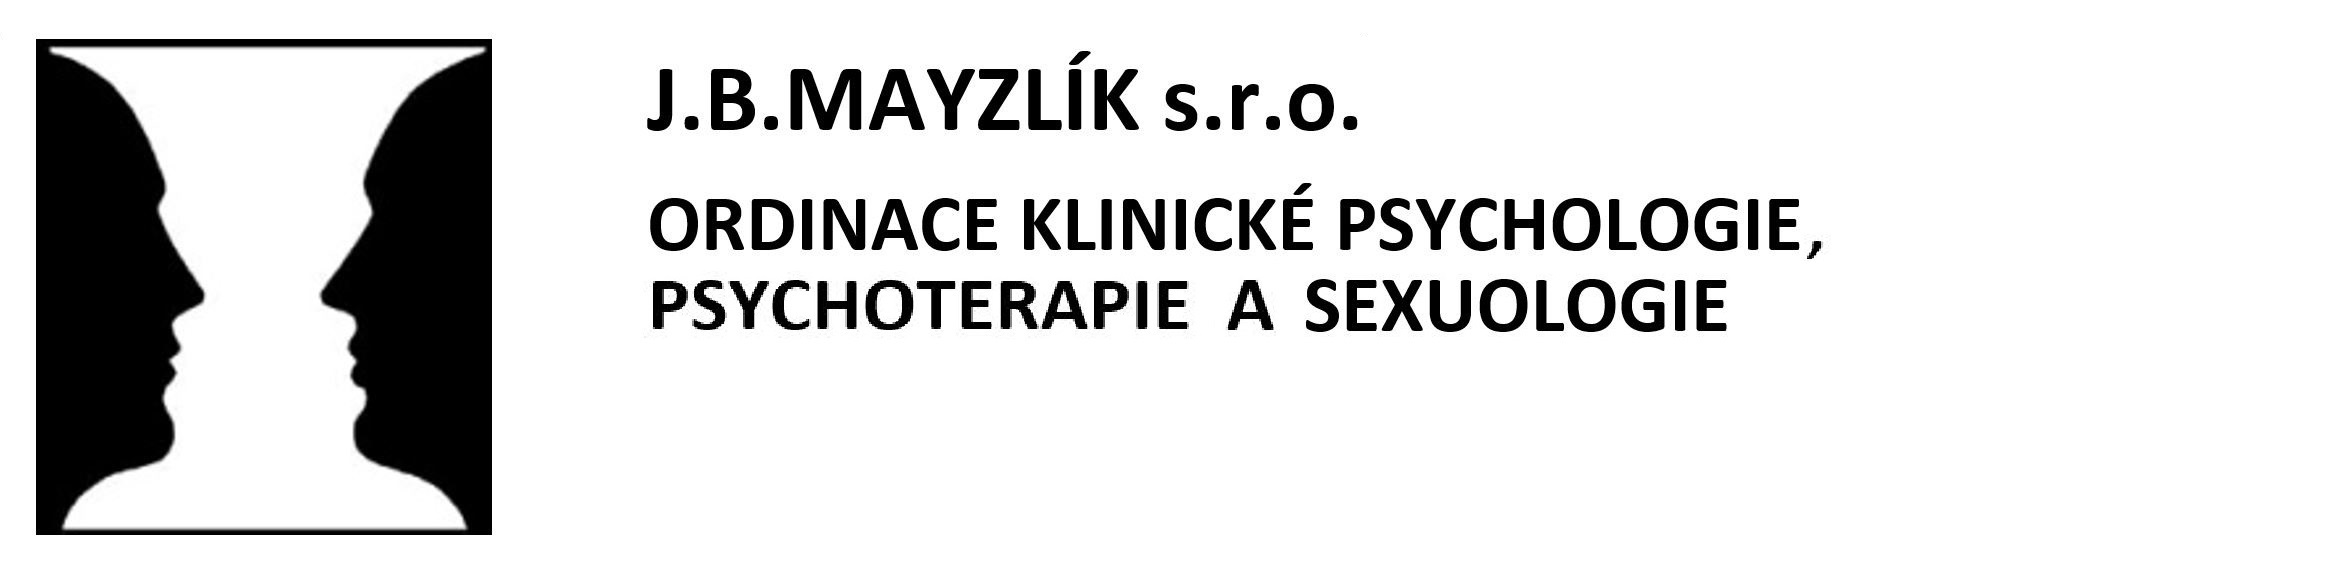 J.B.MAYZLÍK s.r.o. - ORDINACE KLINICKÉ PSYCHOLOGIE, SEXUOLOGIE A PSYCHOTERAPIE